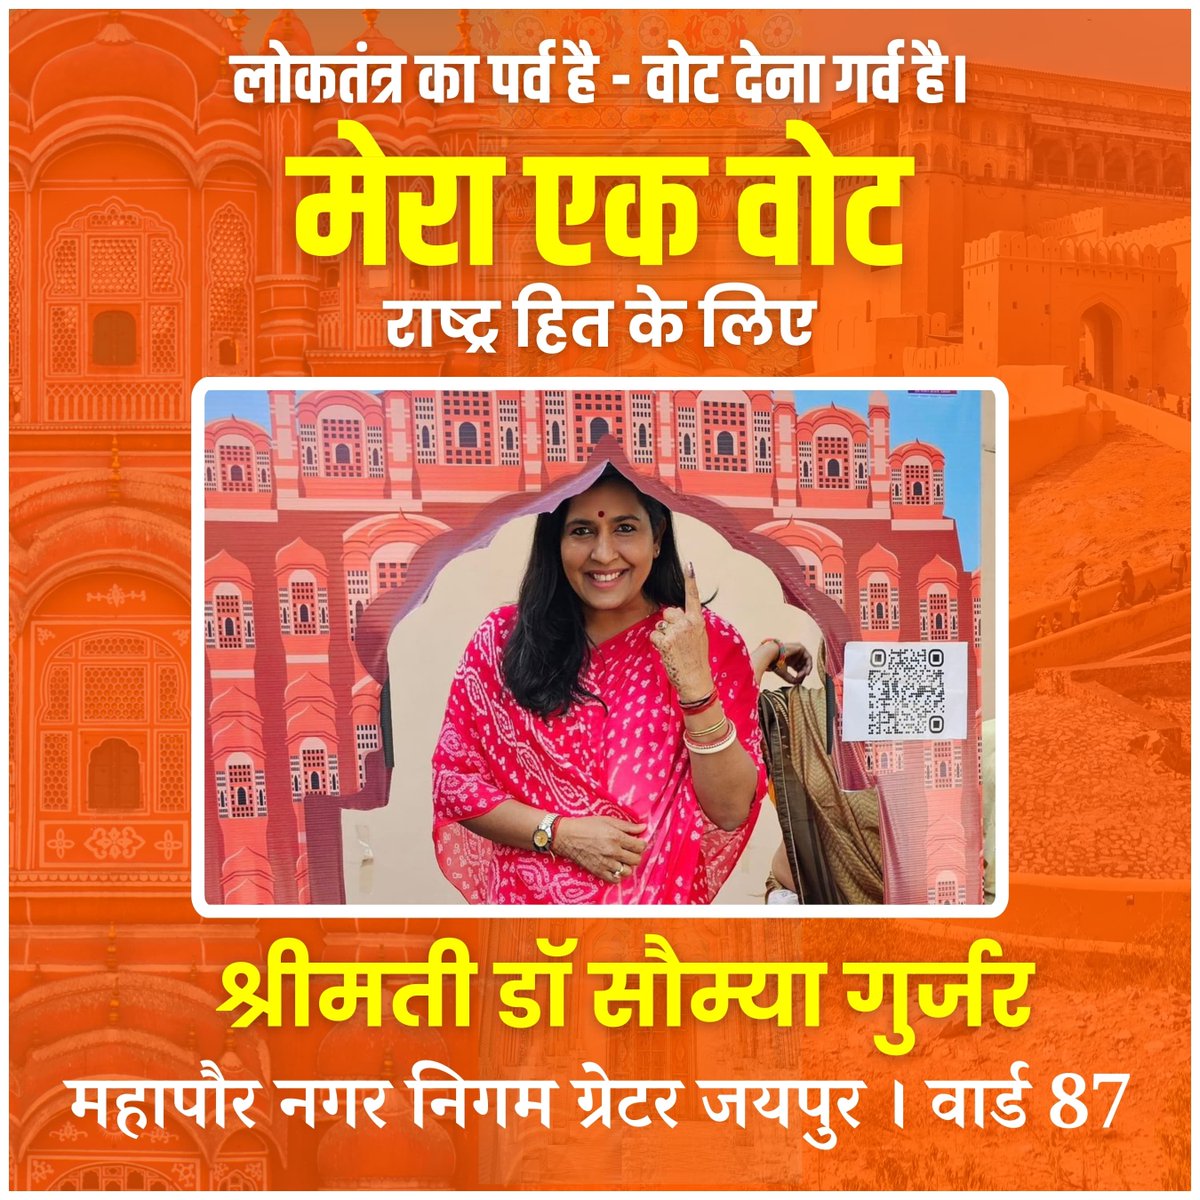 आज जयपुर महापौर श्रीमती @drsomyagurjar जी द्वारा देश के पावन पर्व पर मतदान किया गया। एवं देश के विकास में अपना योगदान कर जयपुरवासियों से देश के हित में मतदान करने की अपील की। #AbkiBaar400Par #AbkiBaar400Paar #जयपुर_की_बेटी_मंजू_शर्मा